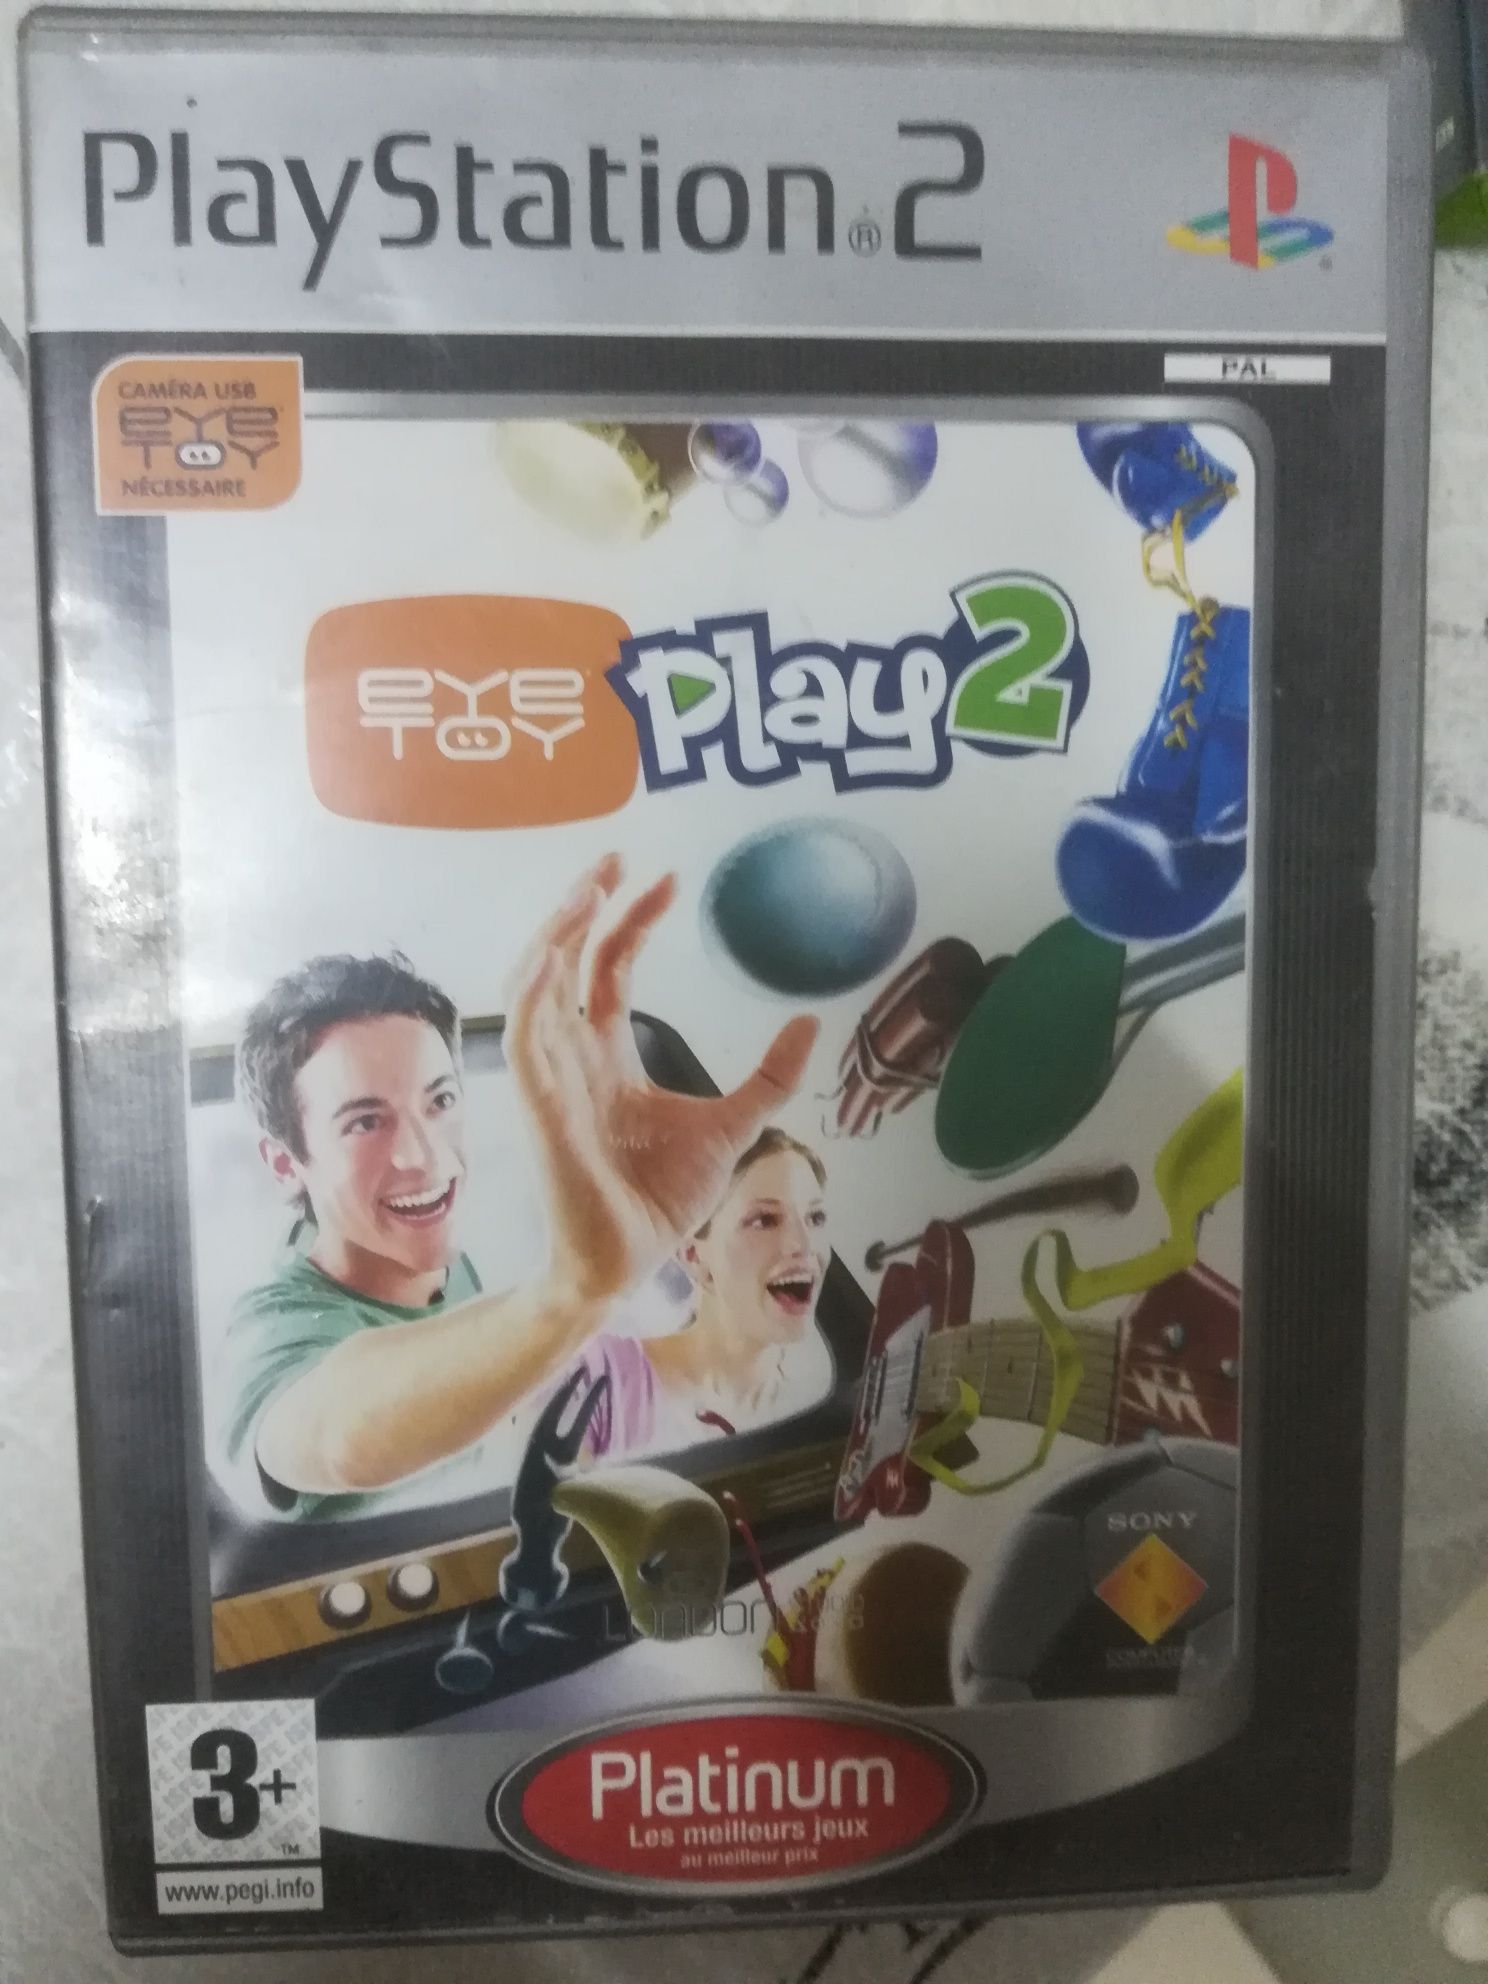 PlayStation 2 eye toy play 2